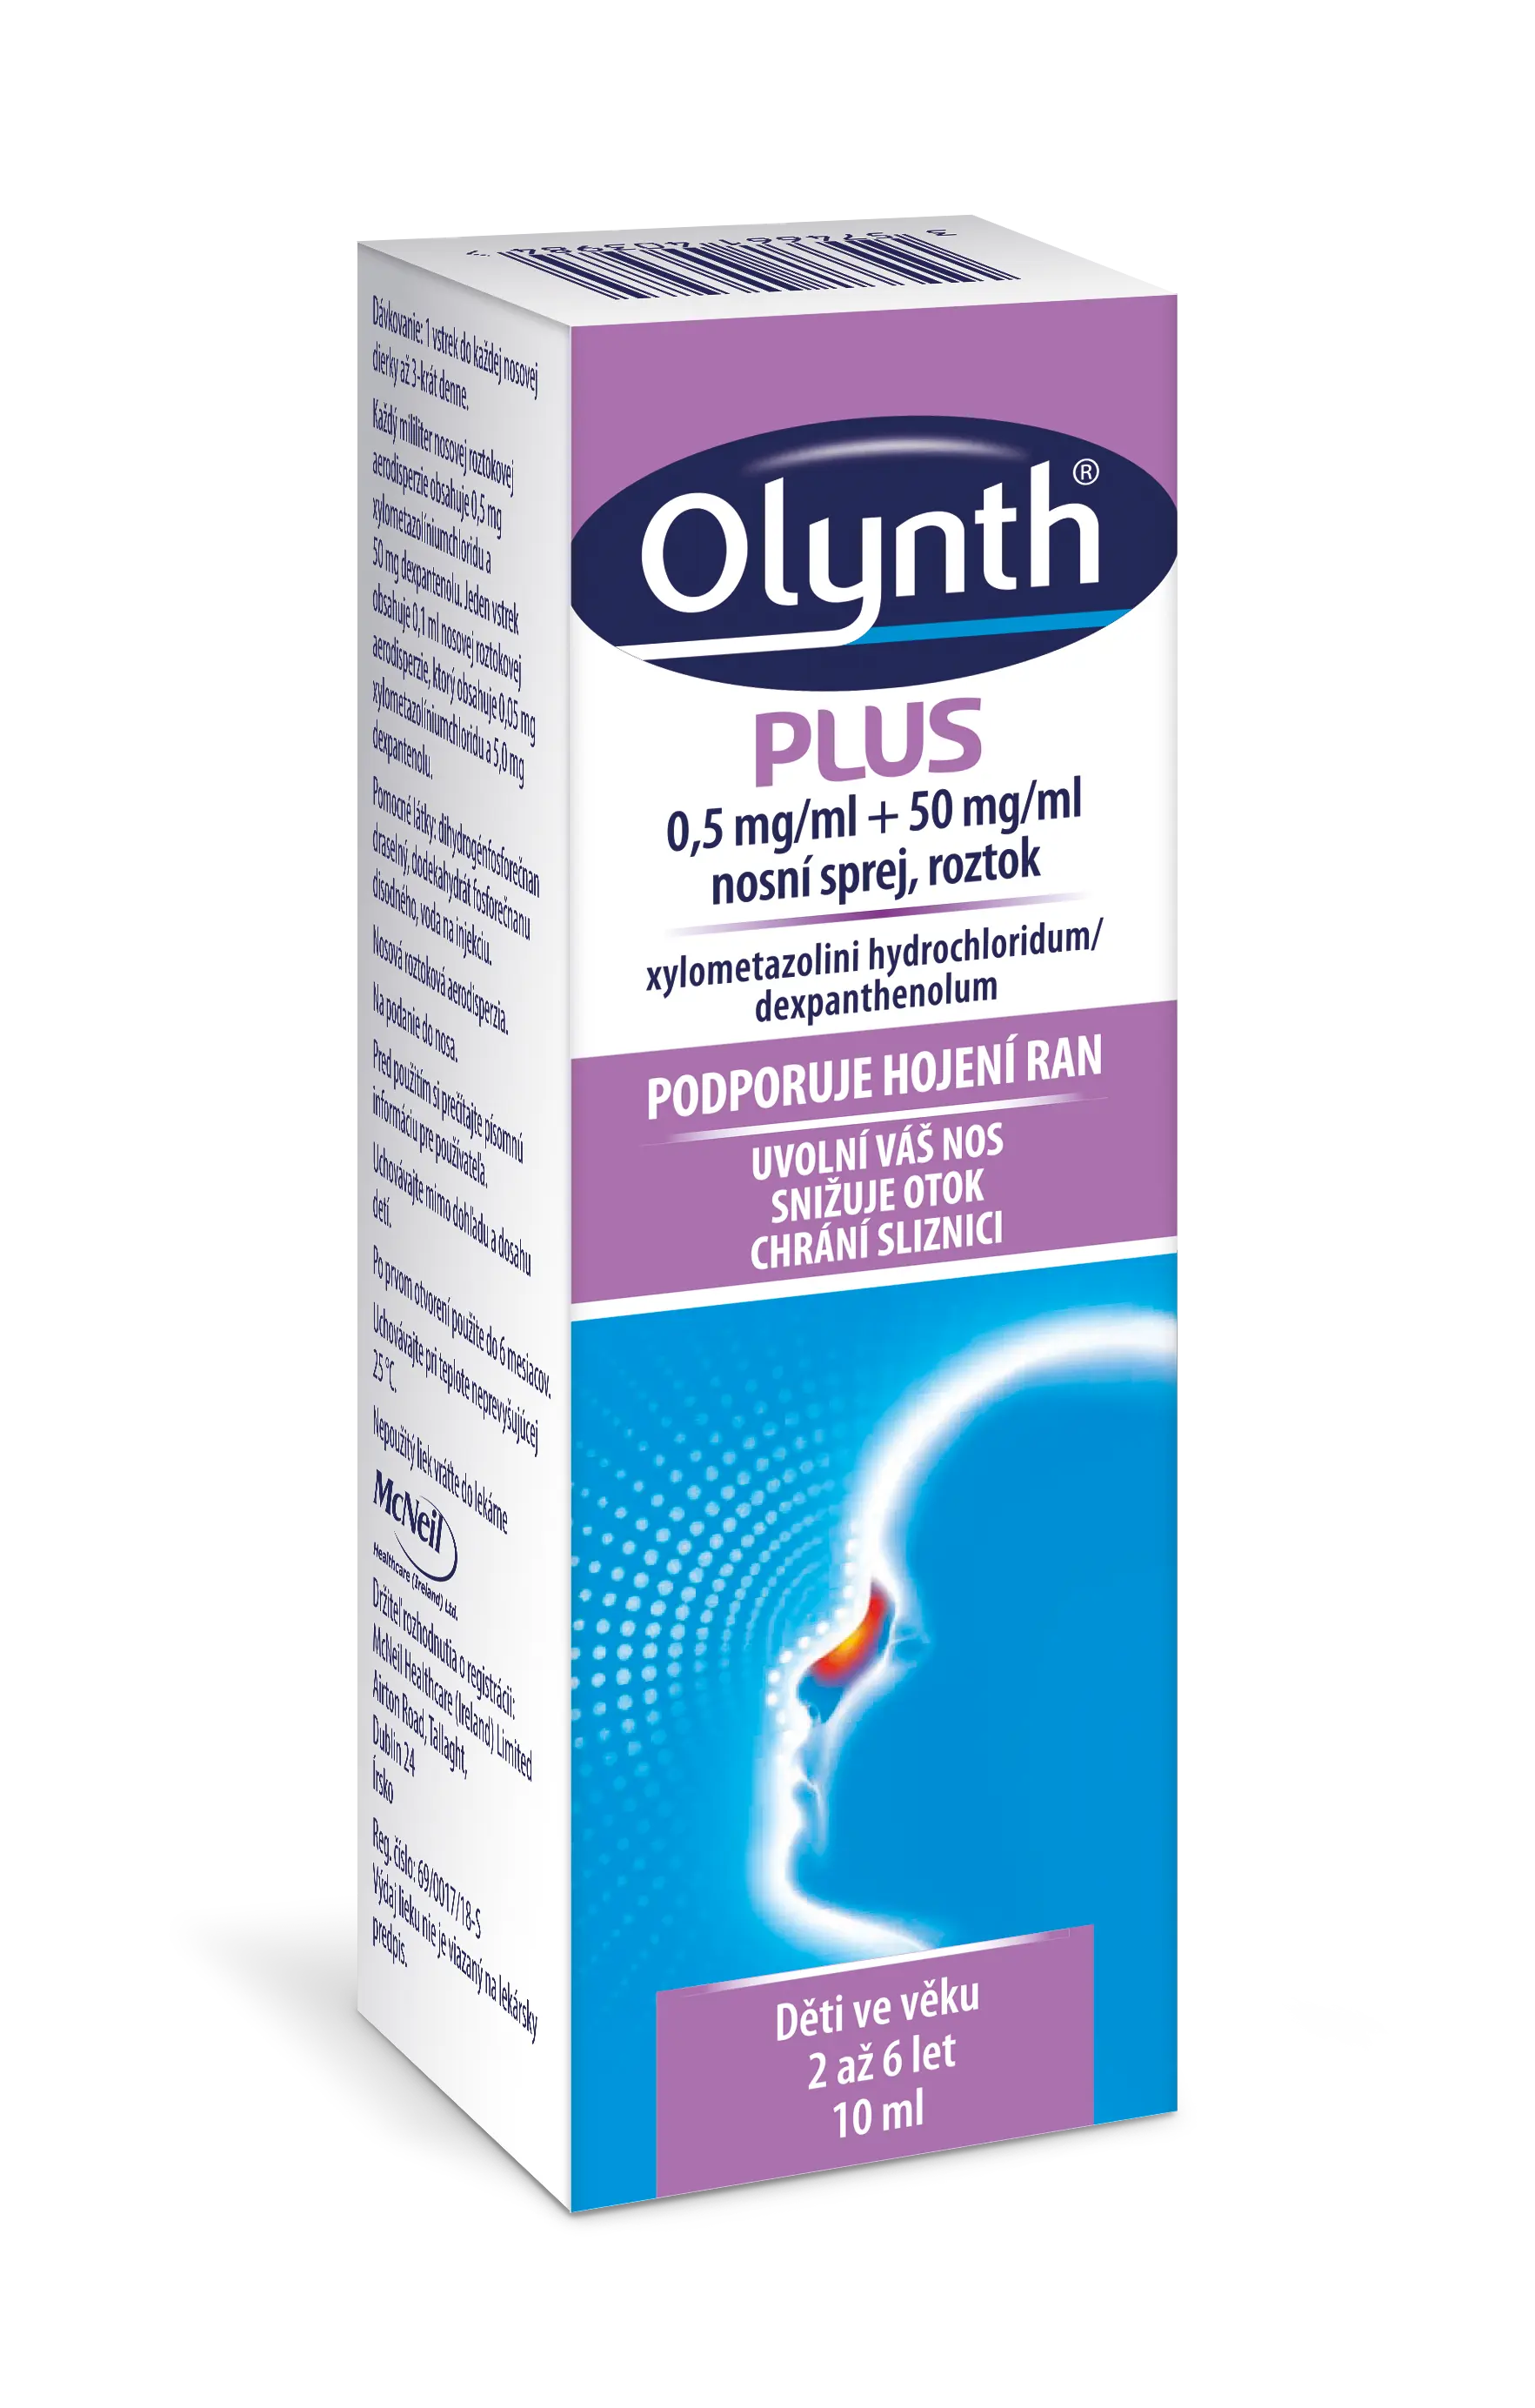 Olynth Plus 0.5 mg/ml+50 mg/ml nas.spr.sol. 1 x 10 ml